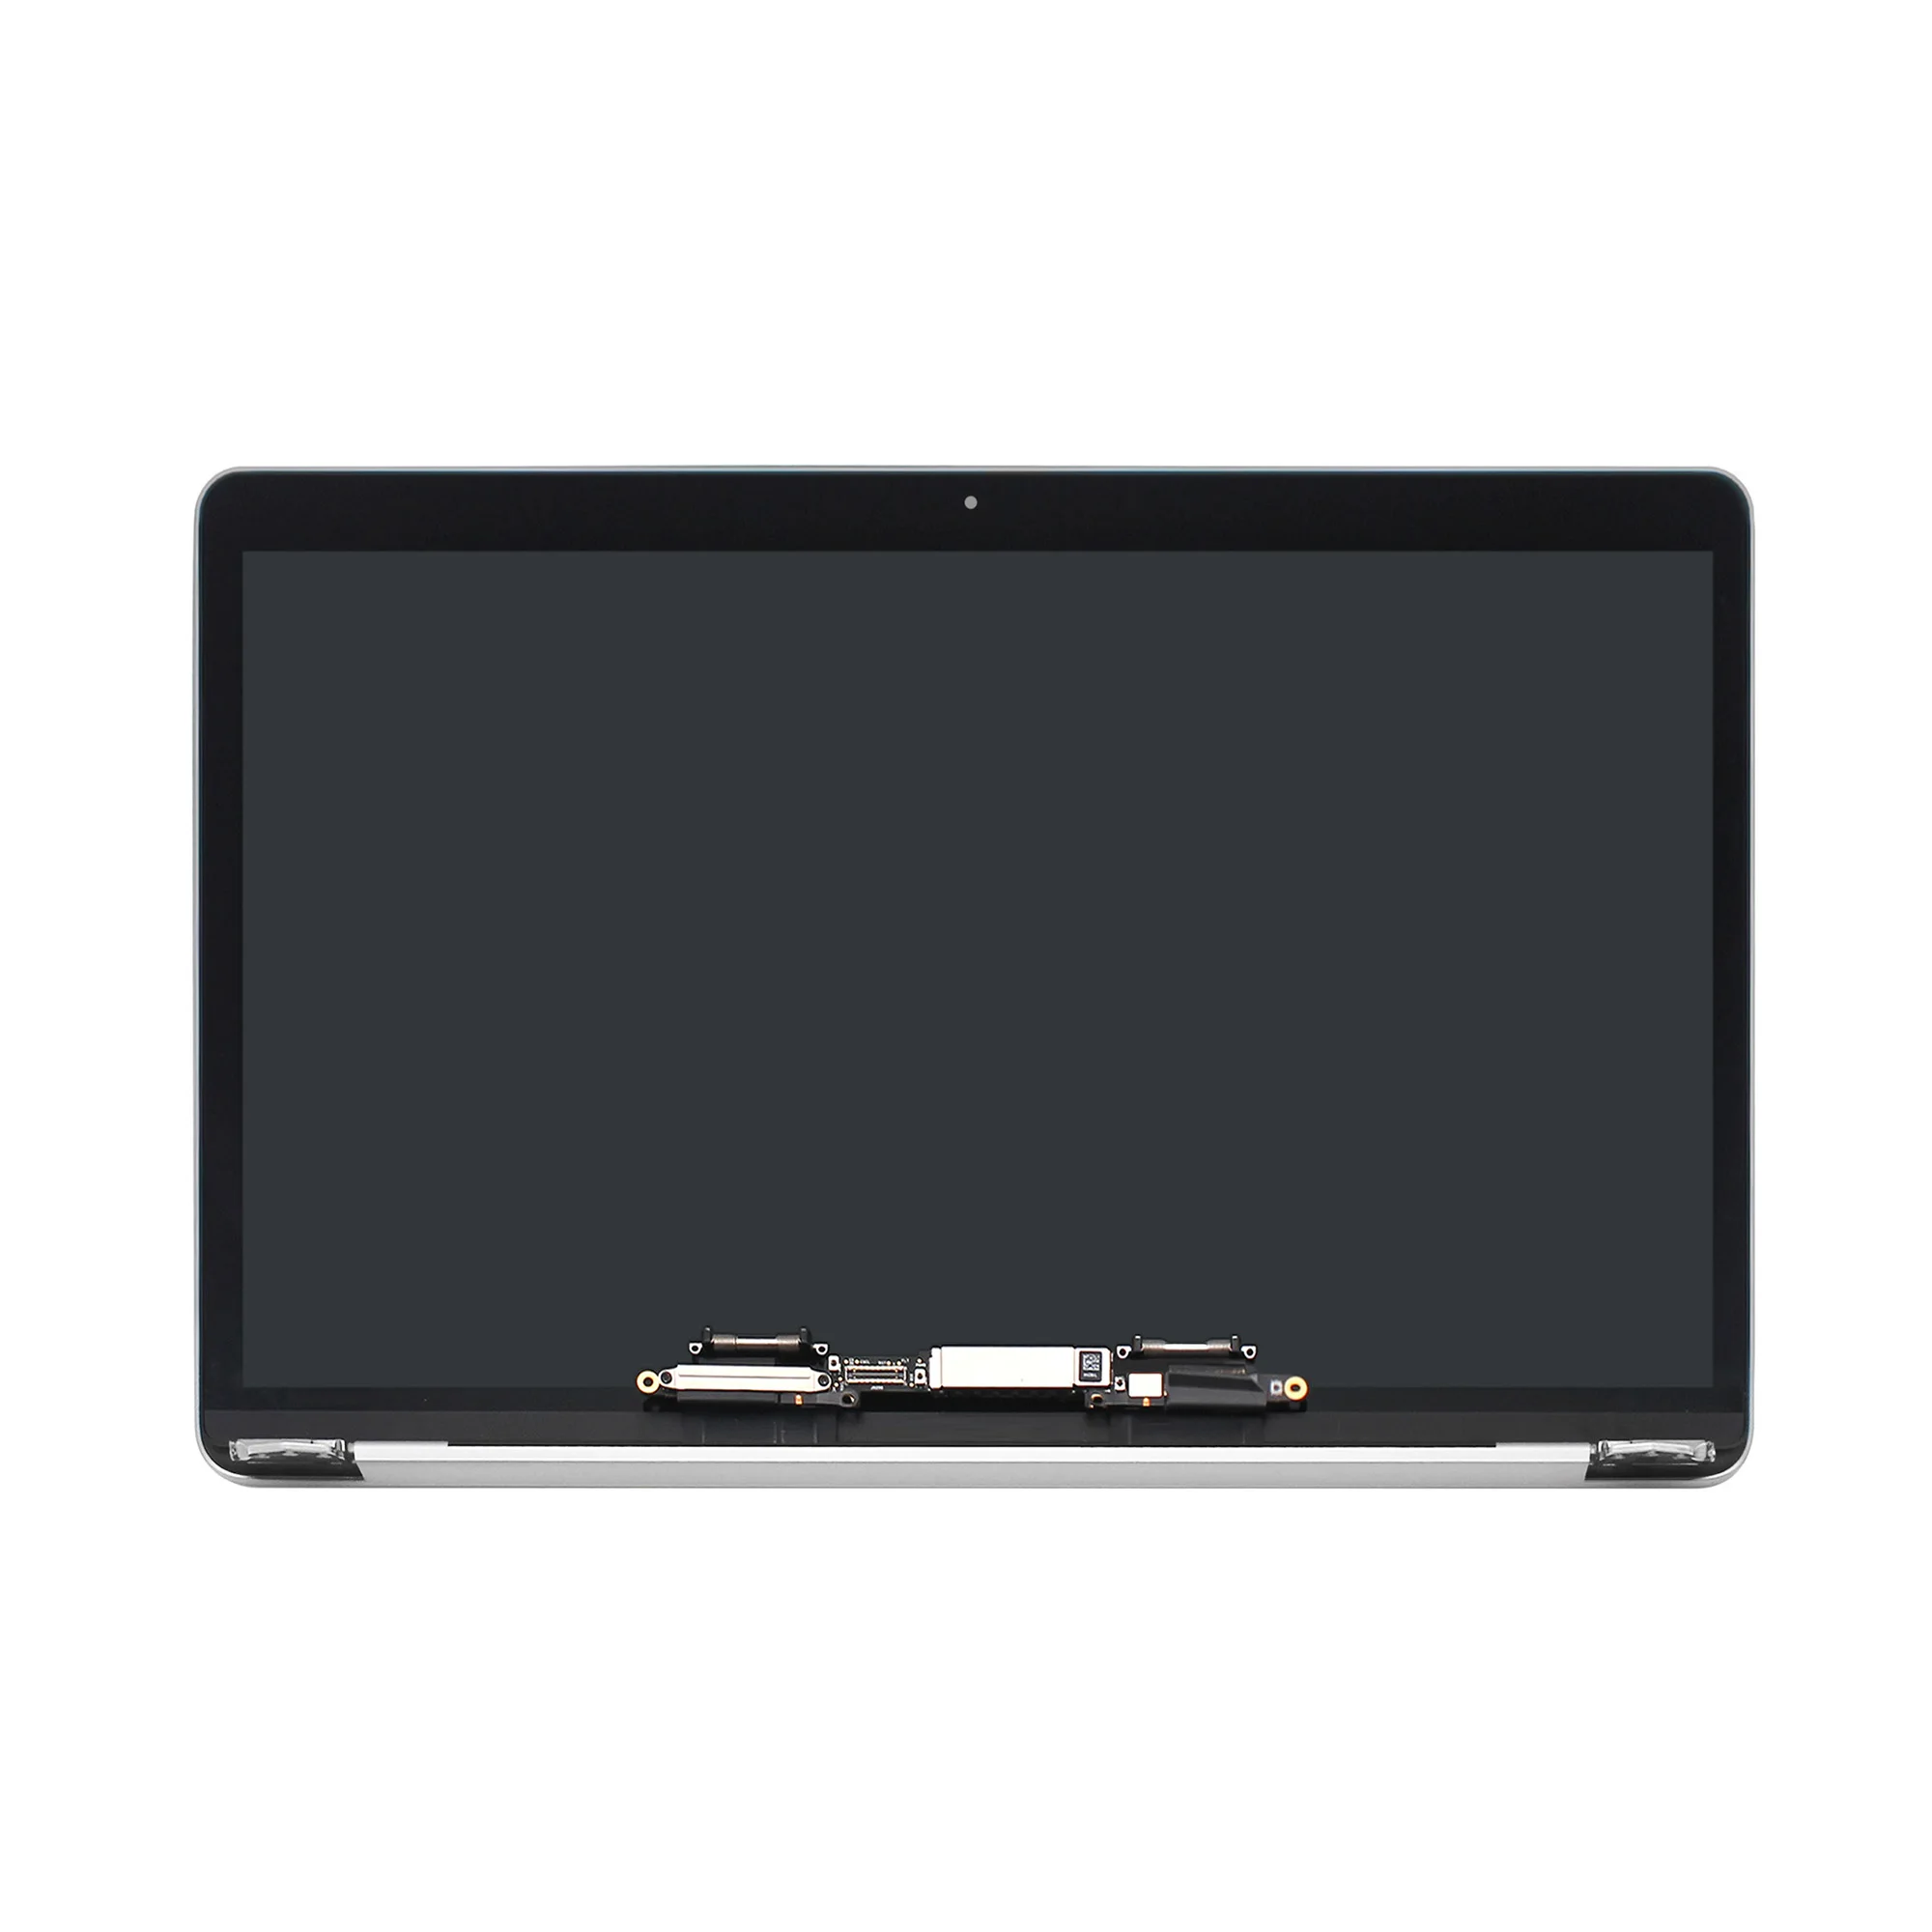 

Оригинальный Новый ЖК-дисплей A1706 в сборе для Macbook Pro Retina, полный ЖК-экран 13 дюймов A1708, полная сборка, серый, серебристый, MLH12LL/A